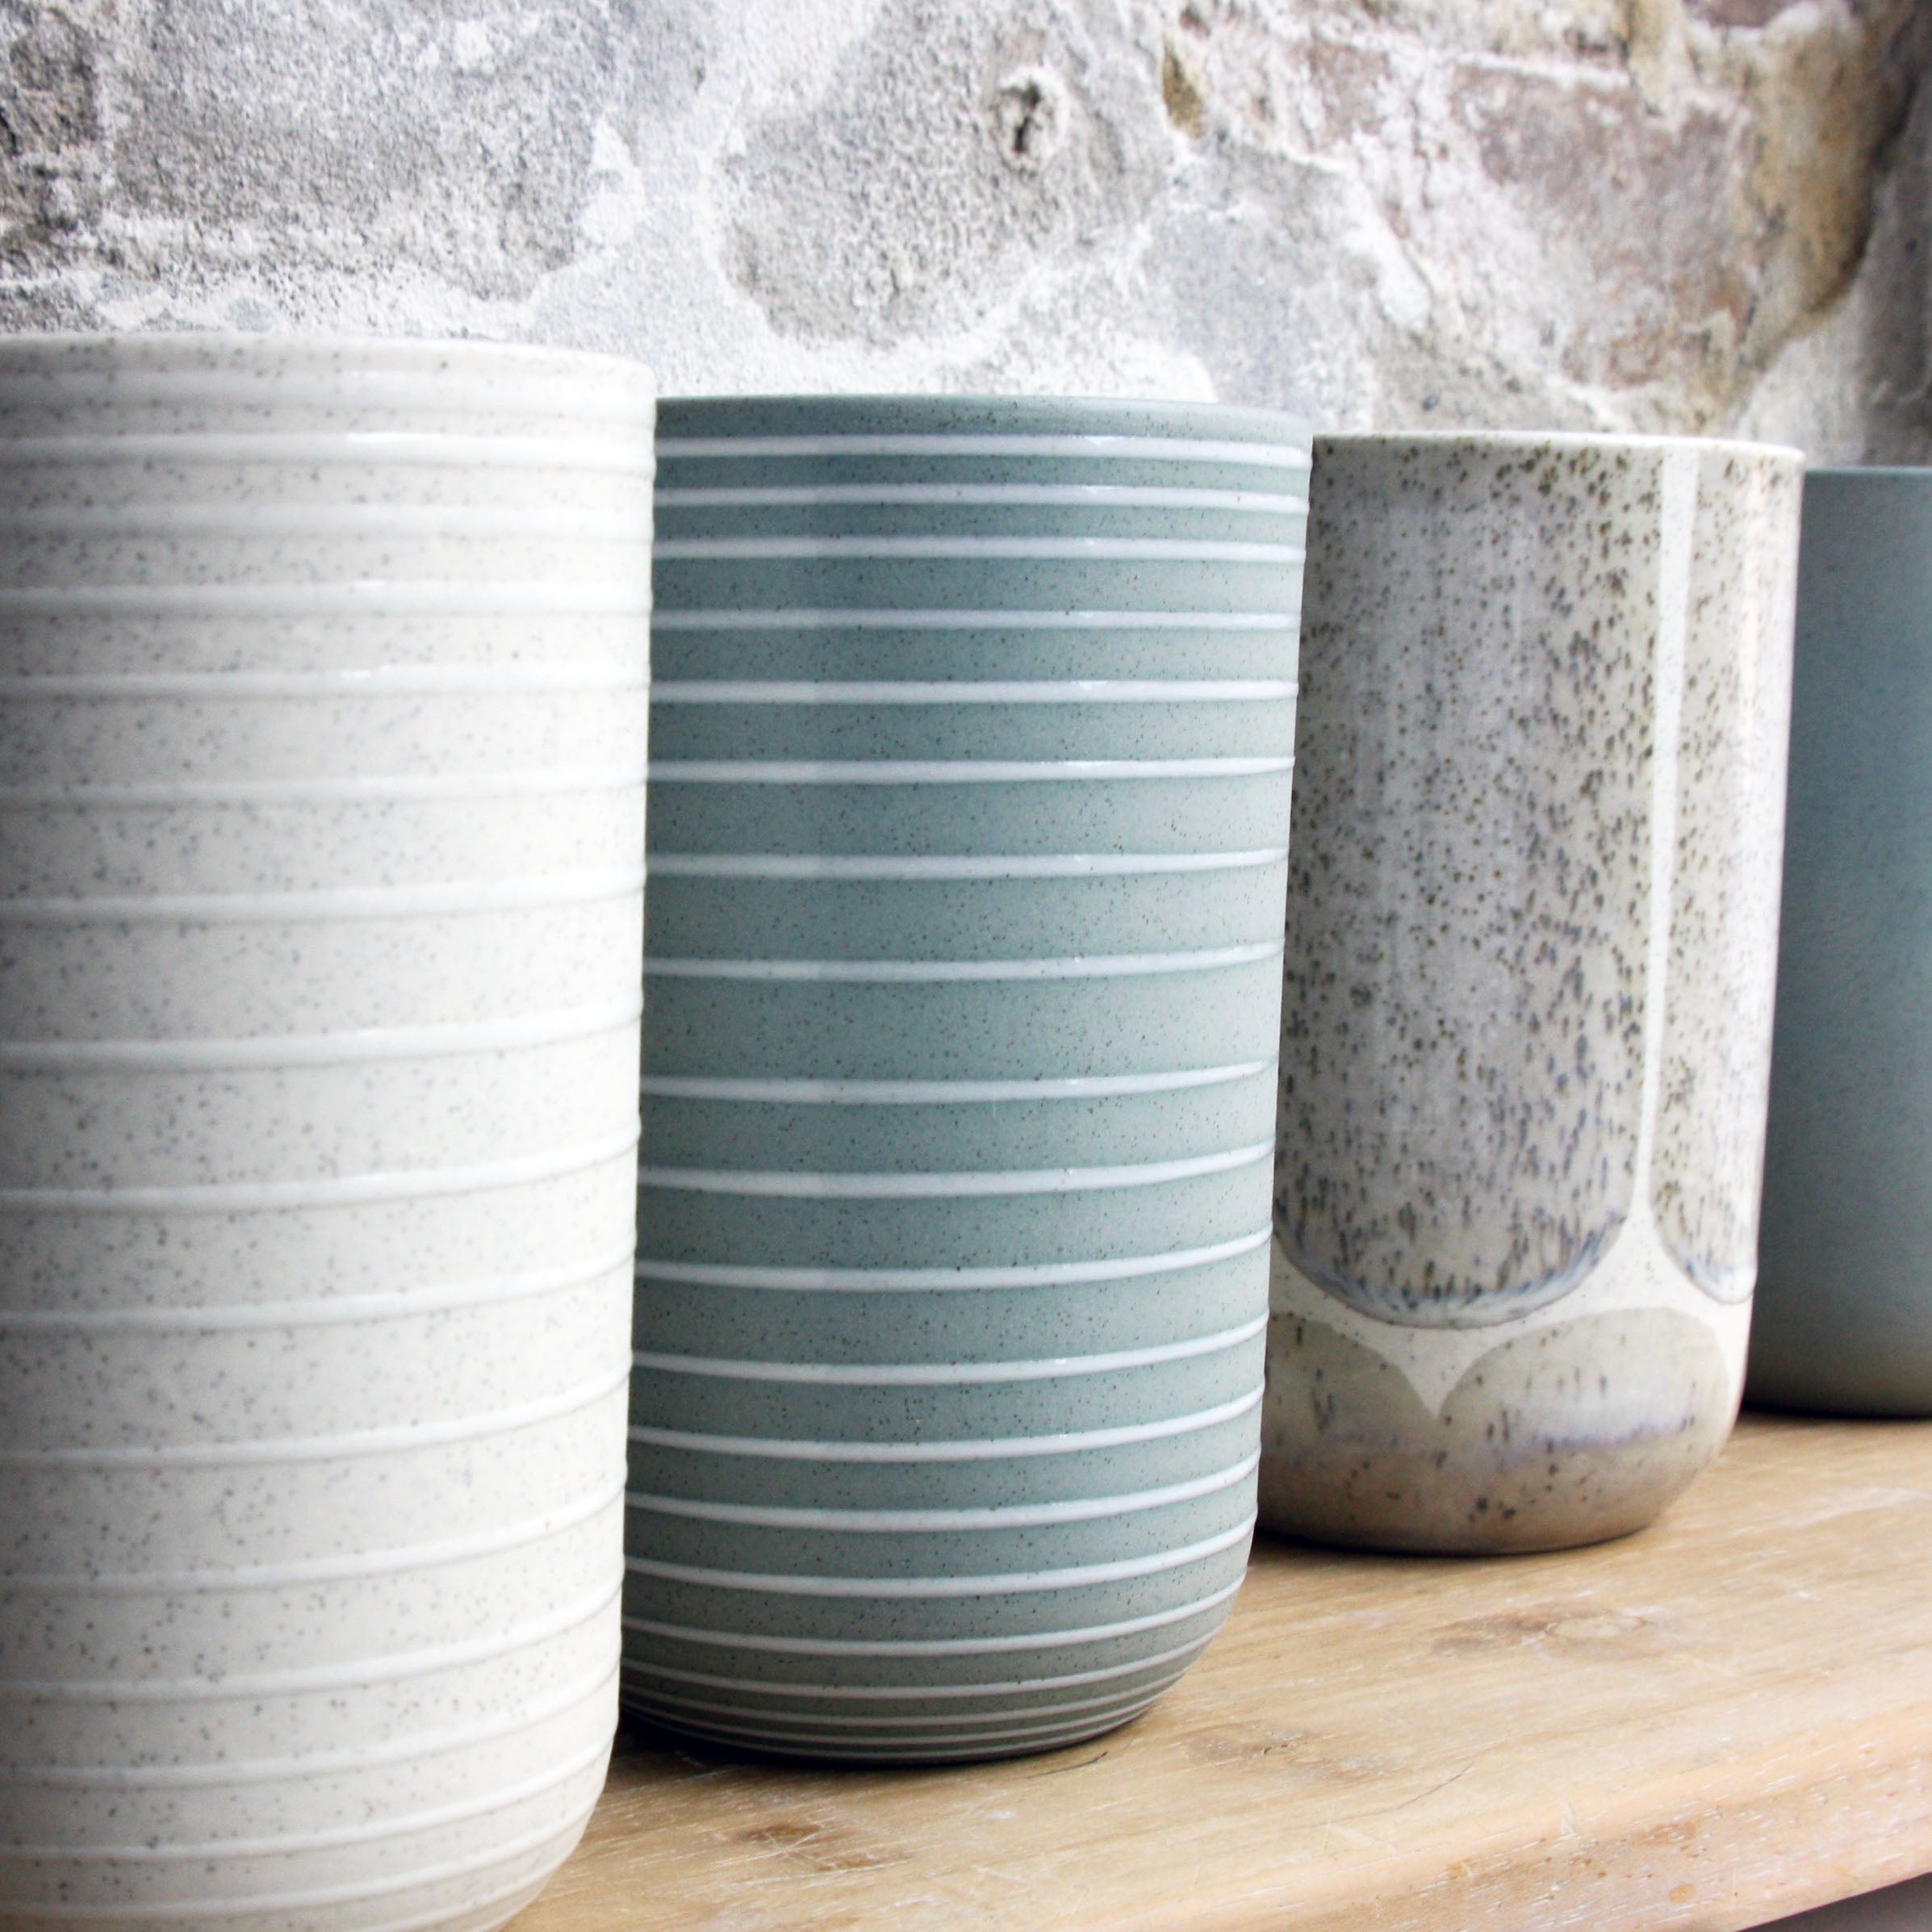 Vase, Light Stone Grey w/ brush strokes (medium)